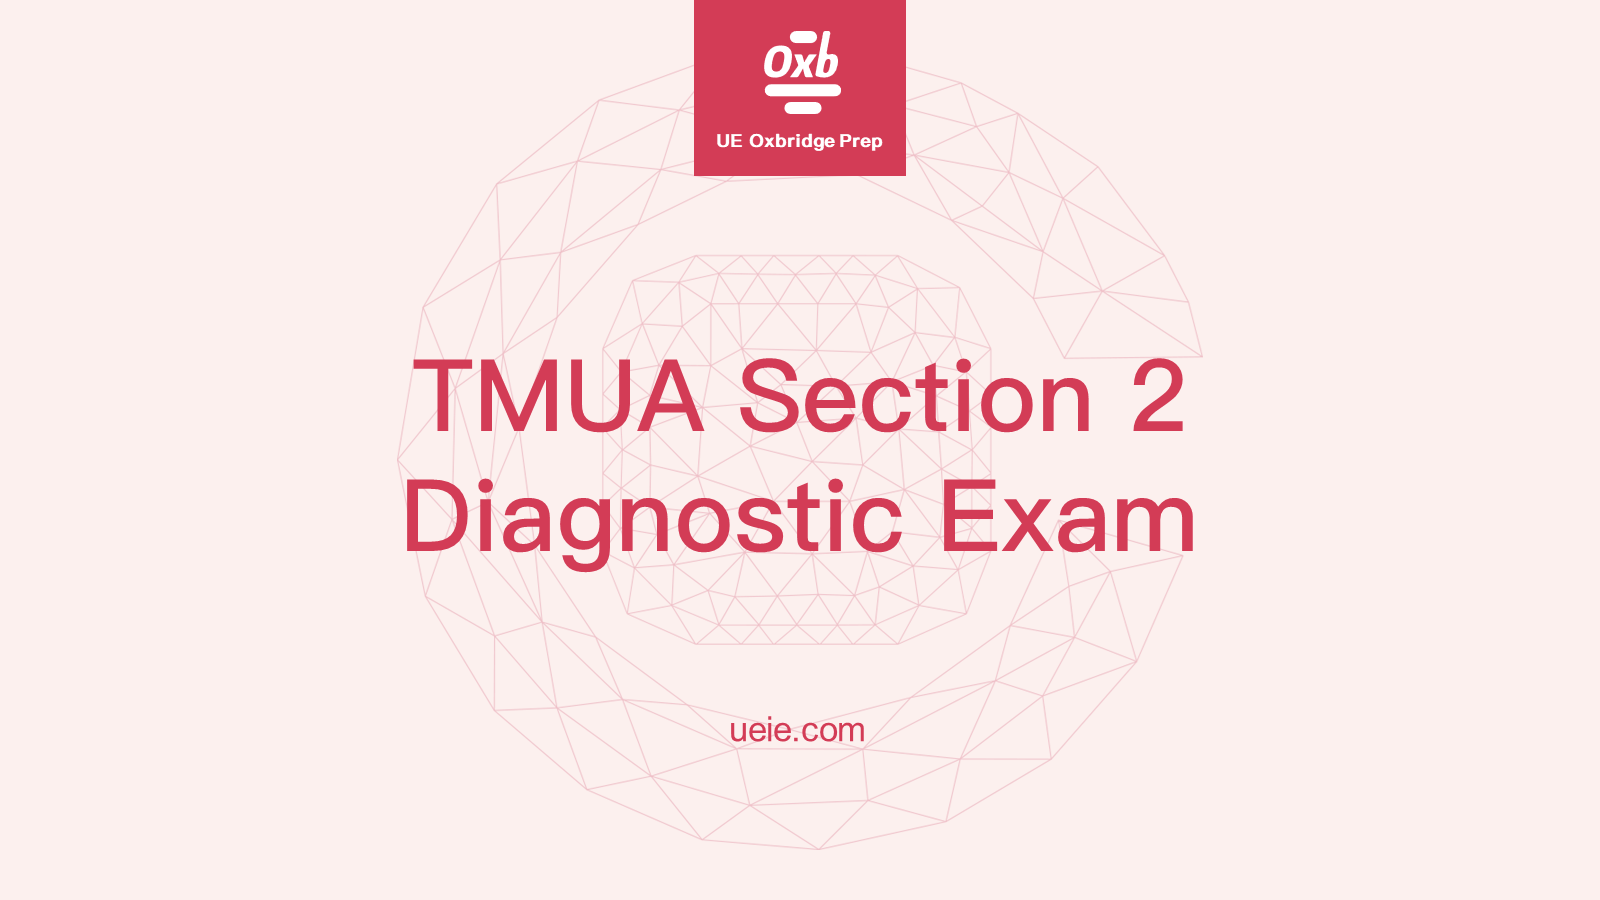 TMUA Section 2 Diagnostic Exam